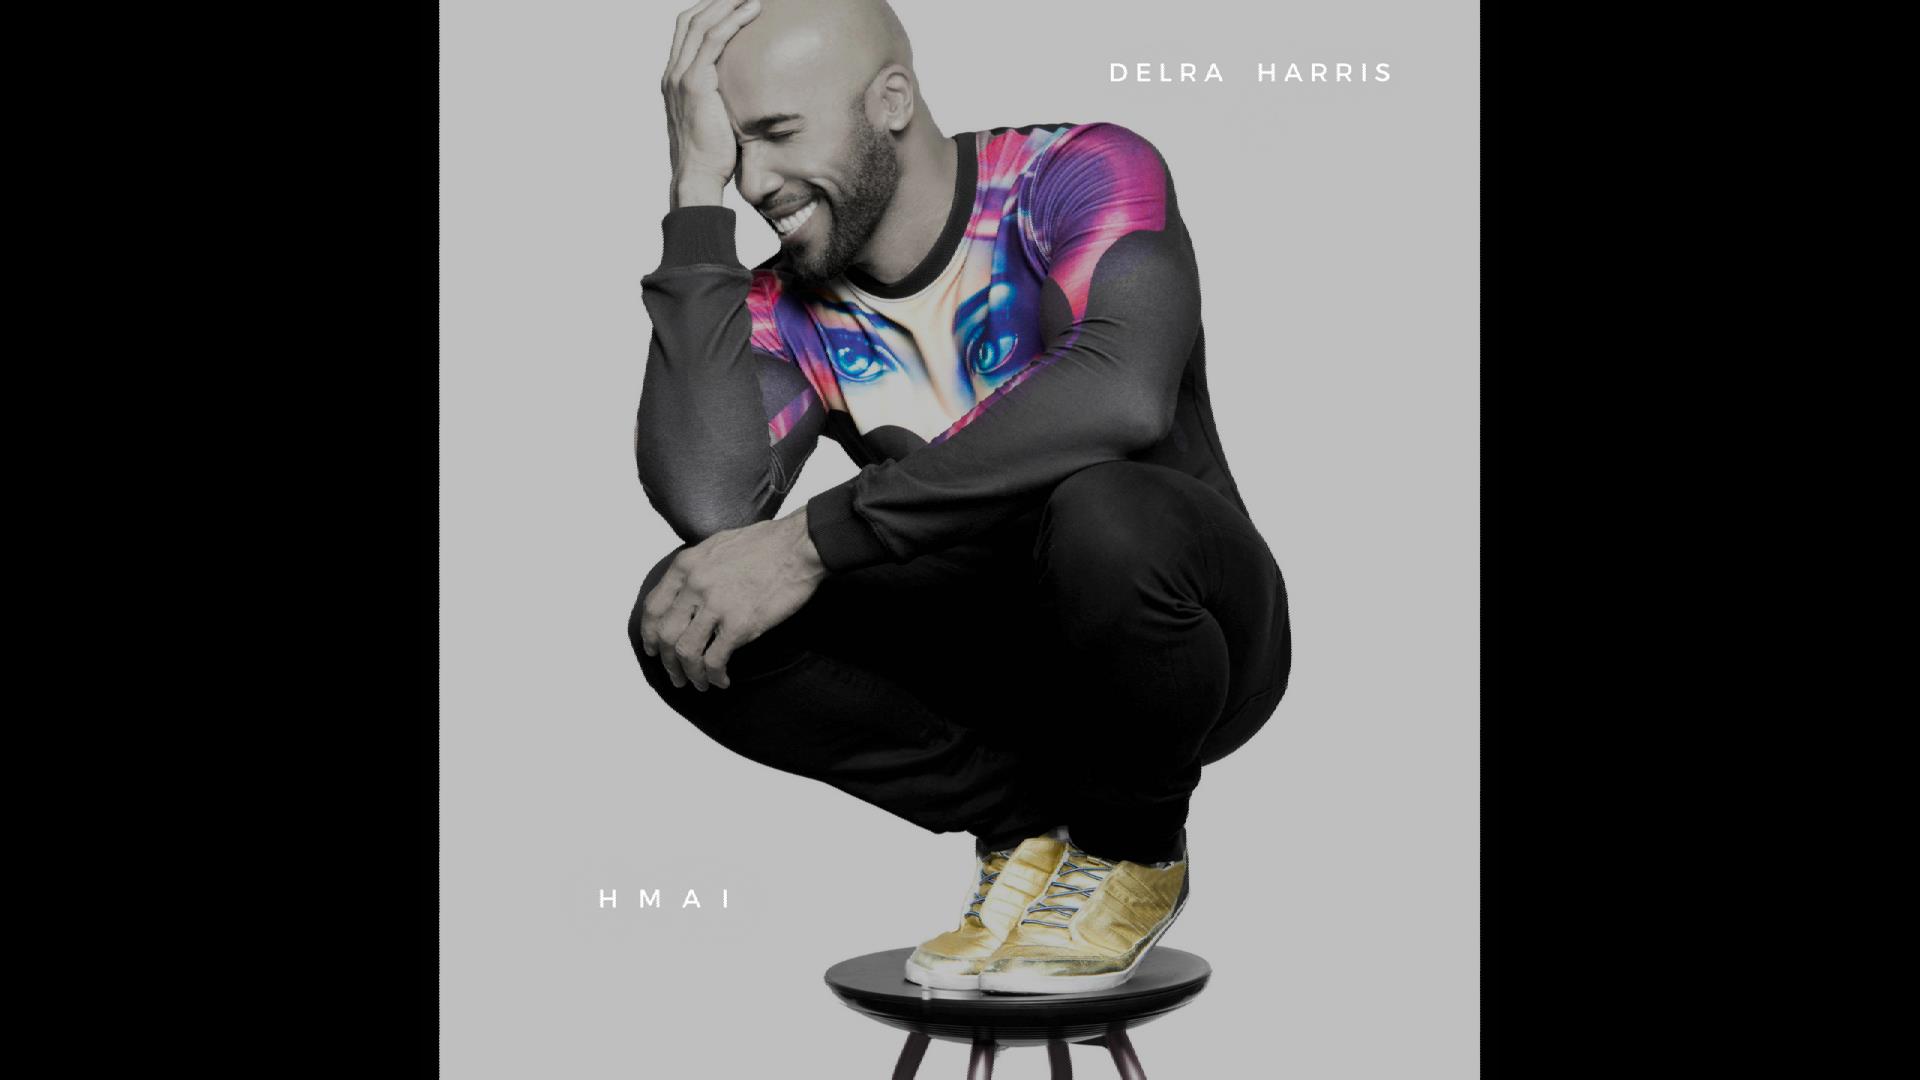  Delra Harris – HMAI Album Sampler